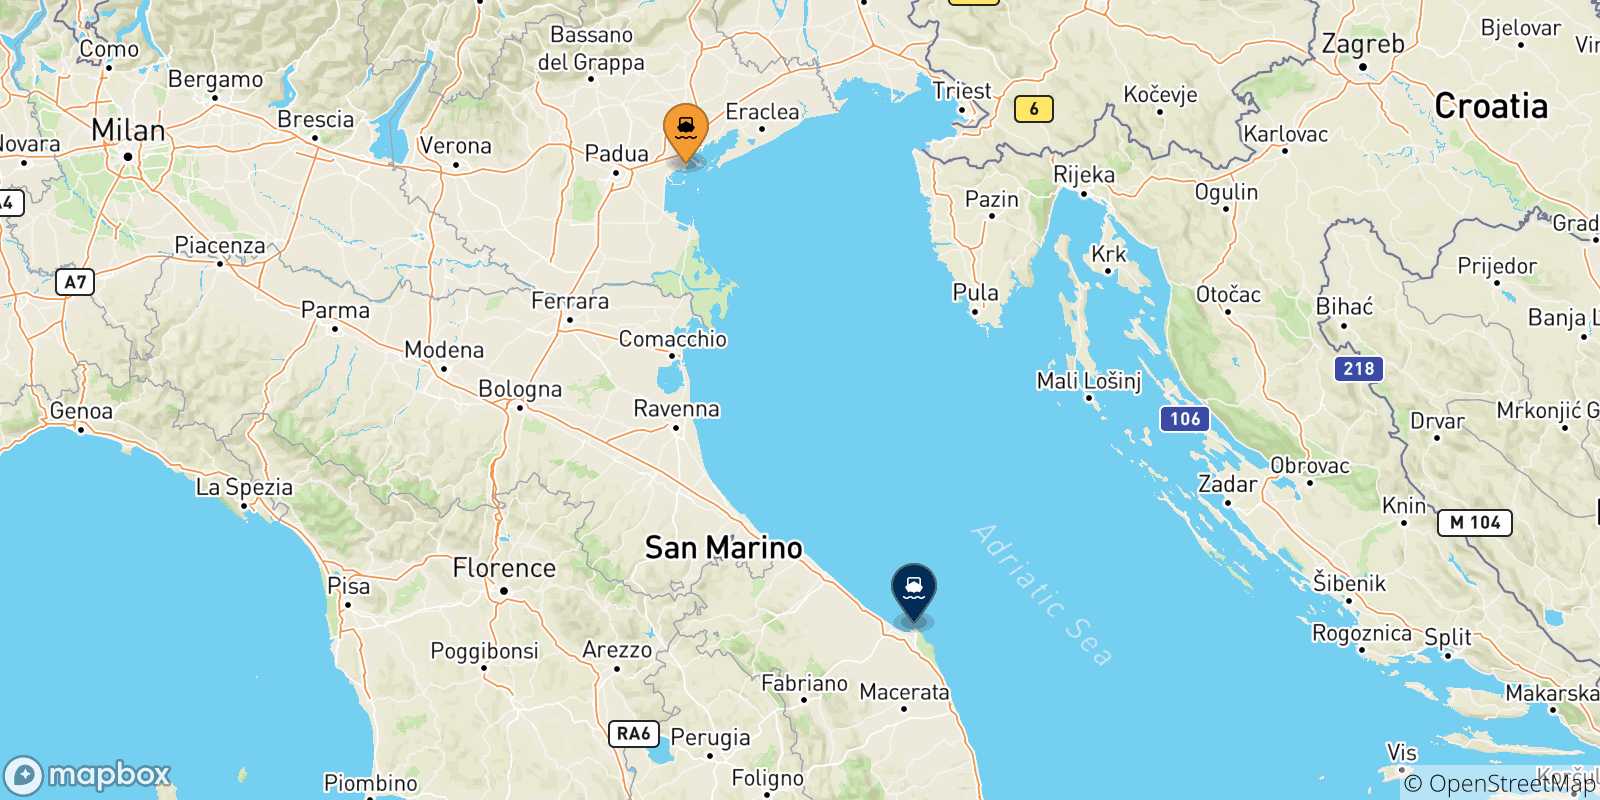 Mappa delle possibili rotte tra Venezia e l'Italia